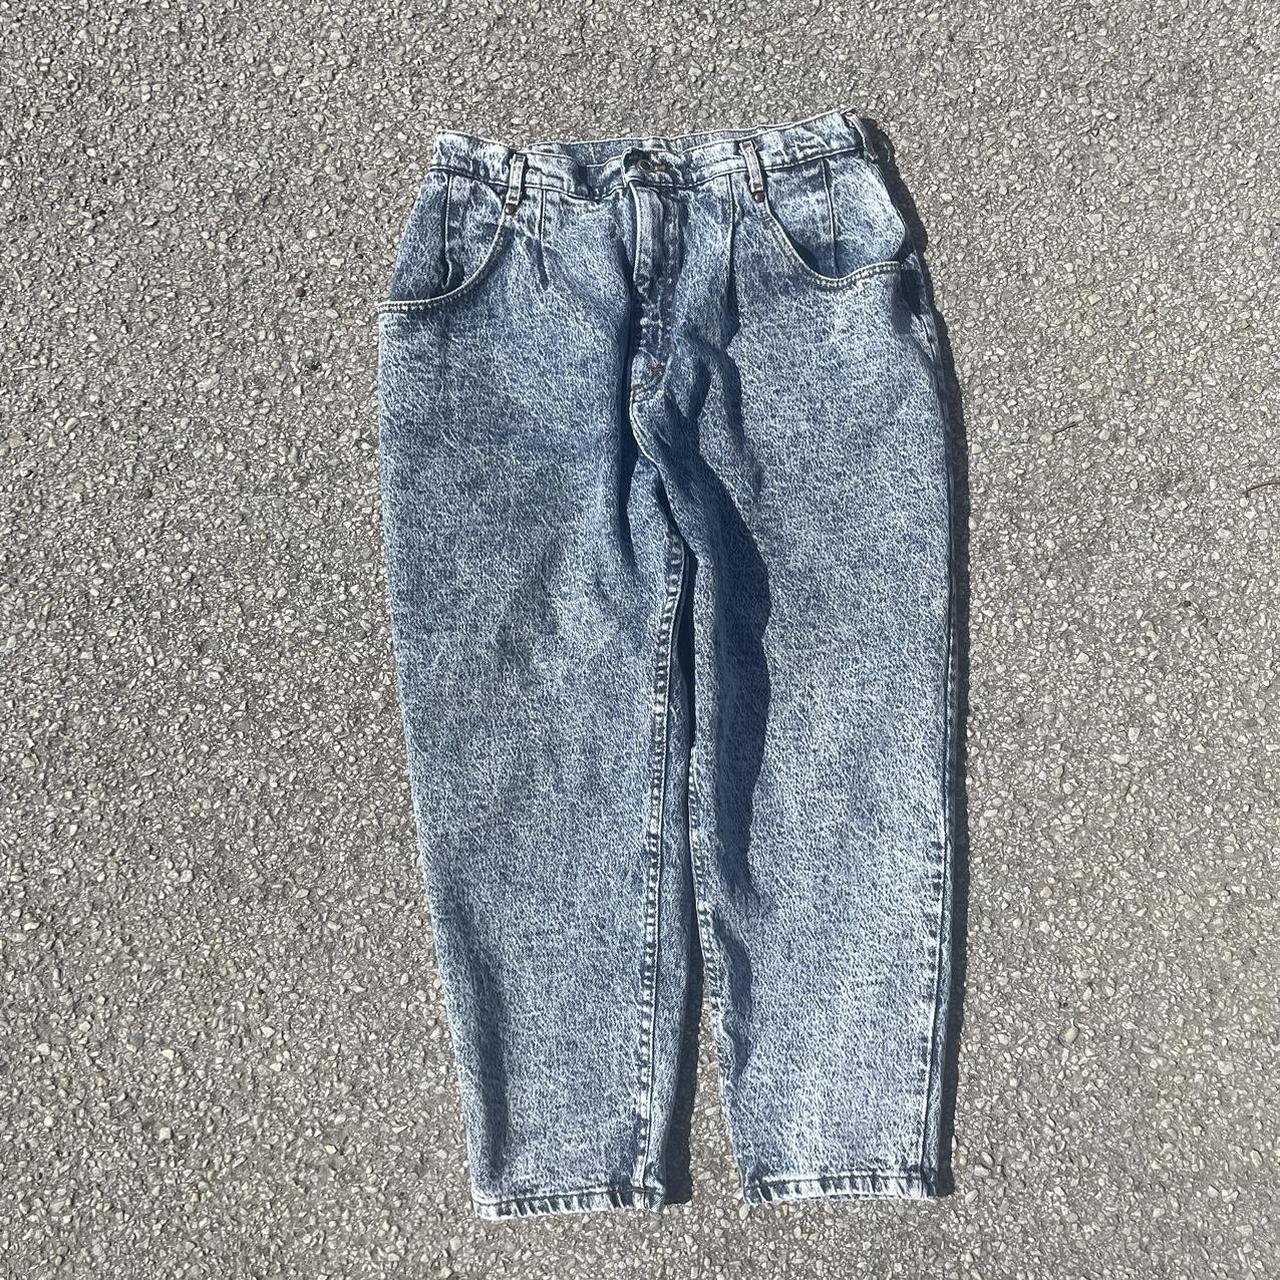 vintage made in usa Lee acid wash jeans, sized 35x27... - Depop